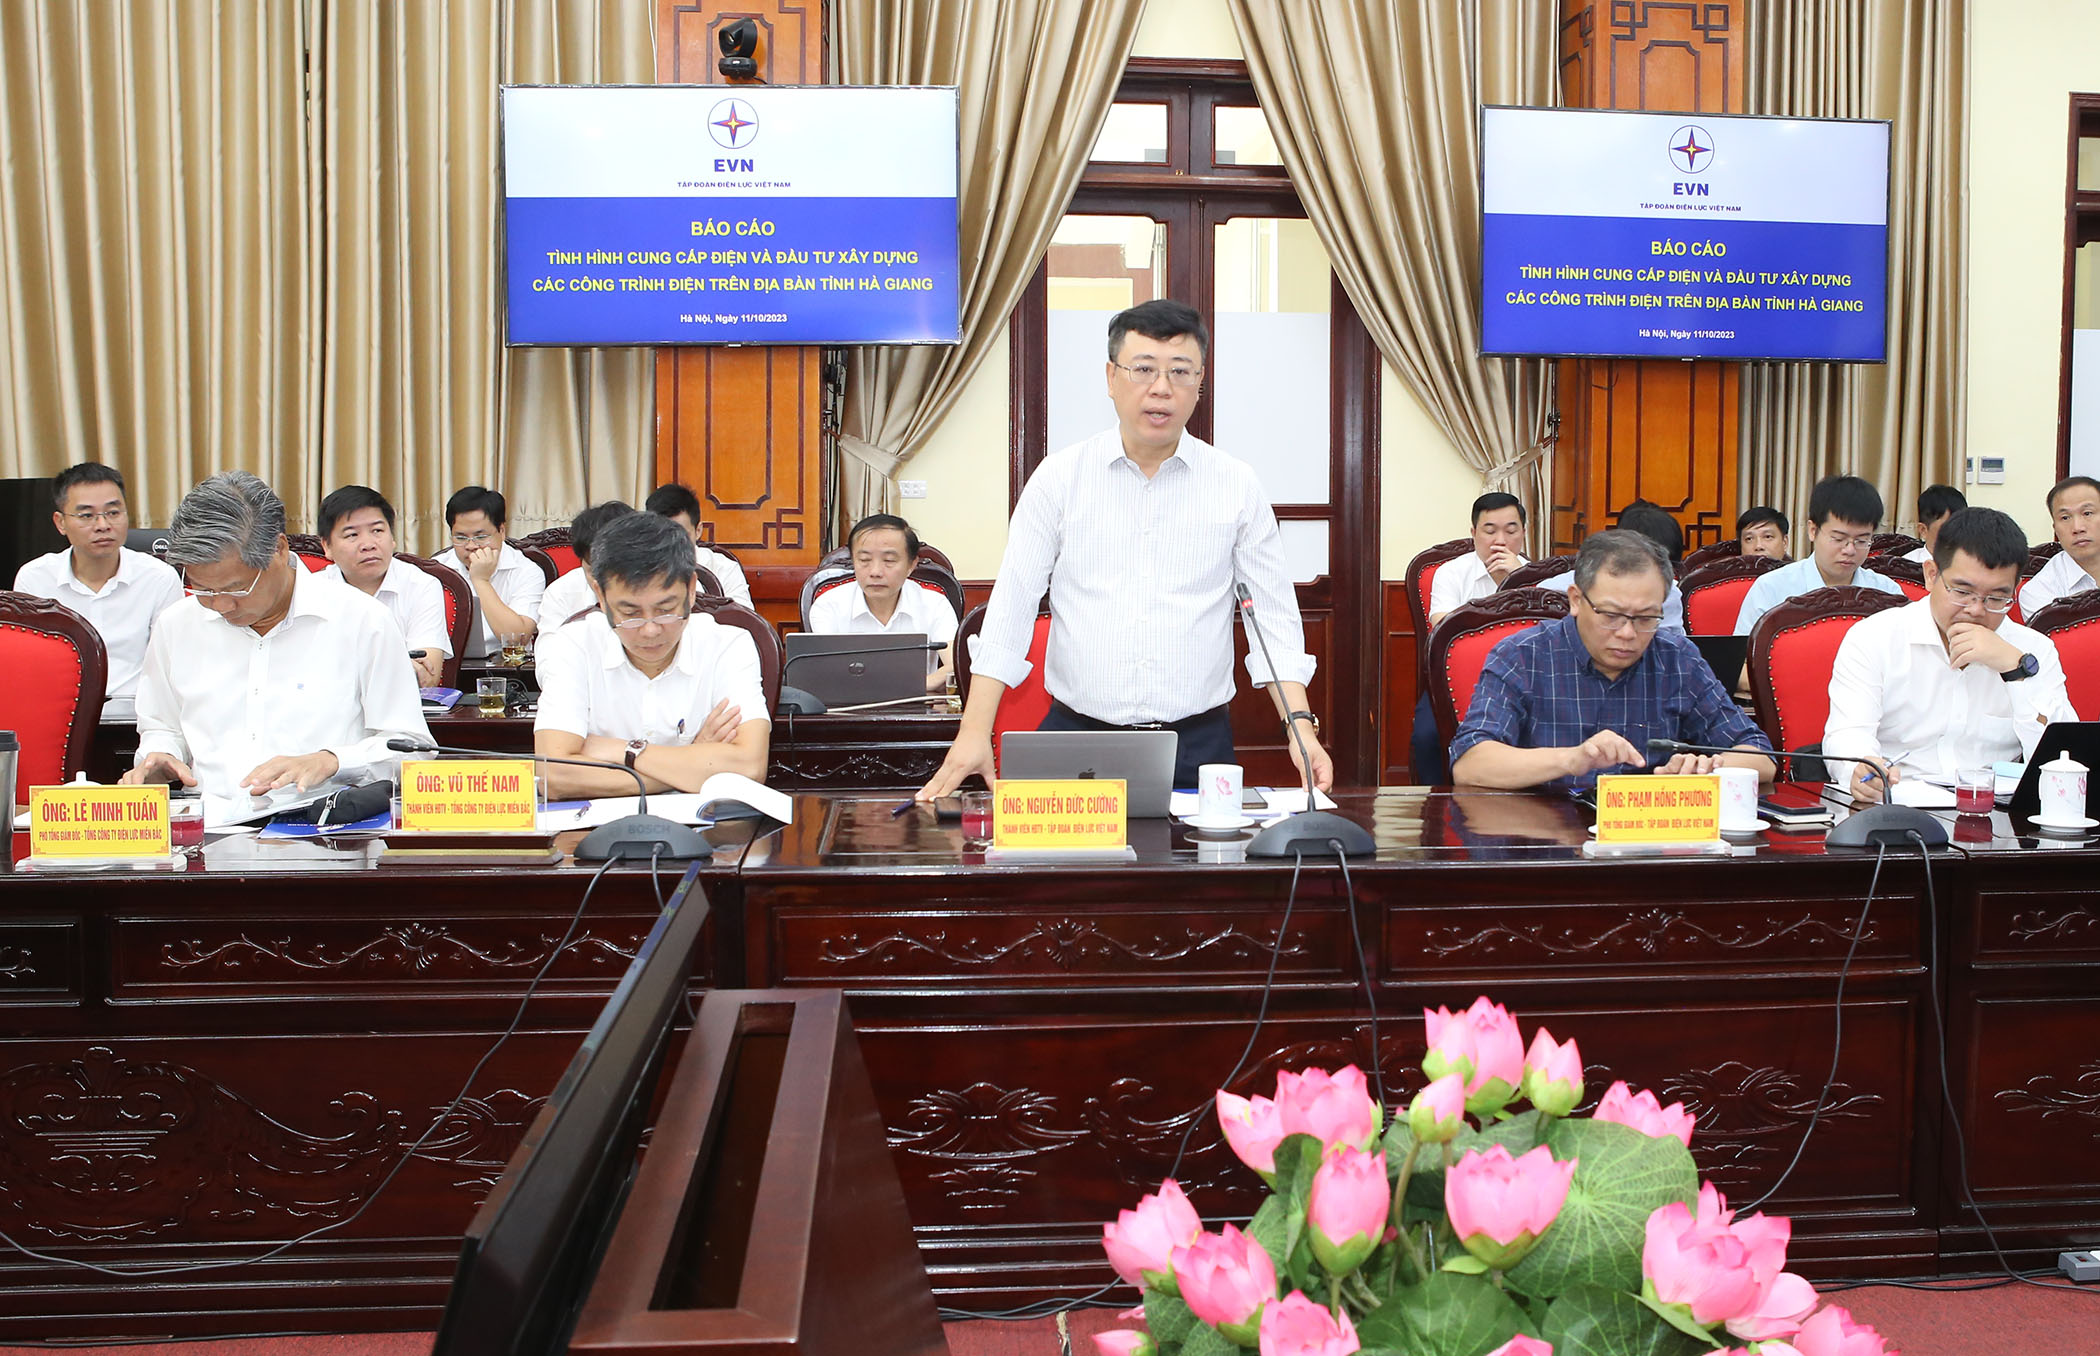 Đoàn công tác của EVN làm việc với tỉnh Hà Giang về thực hiện các dự án điện